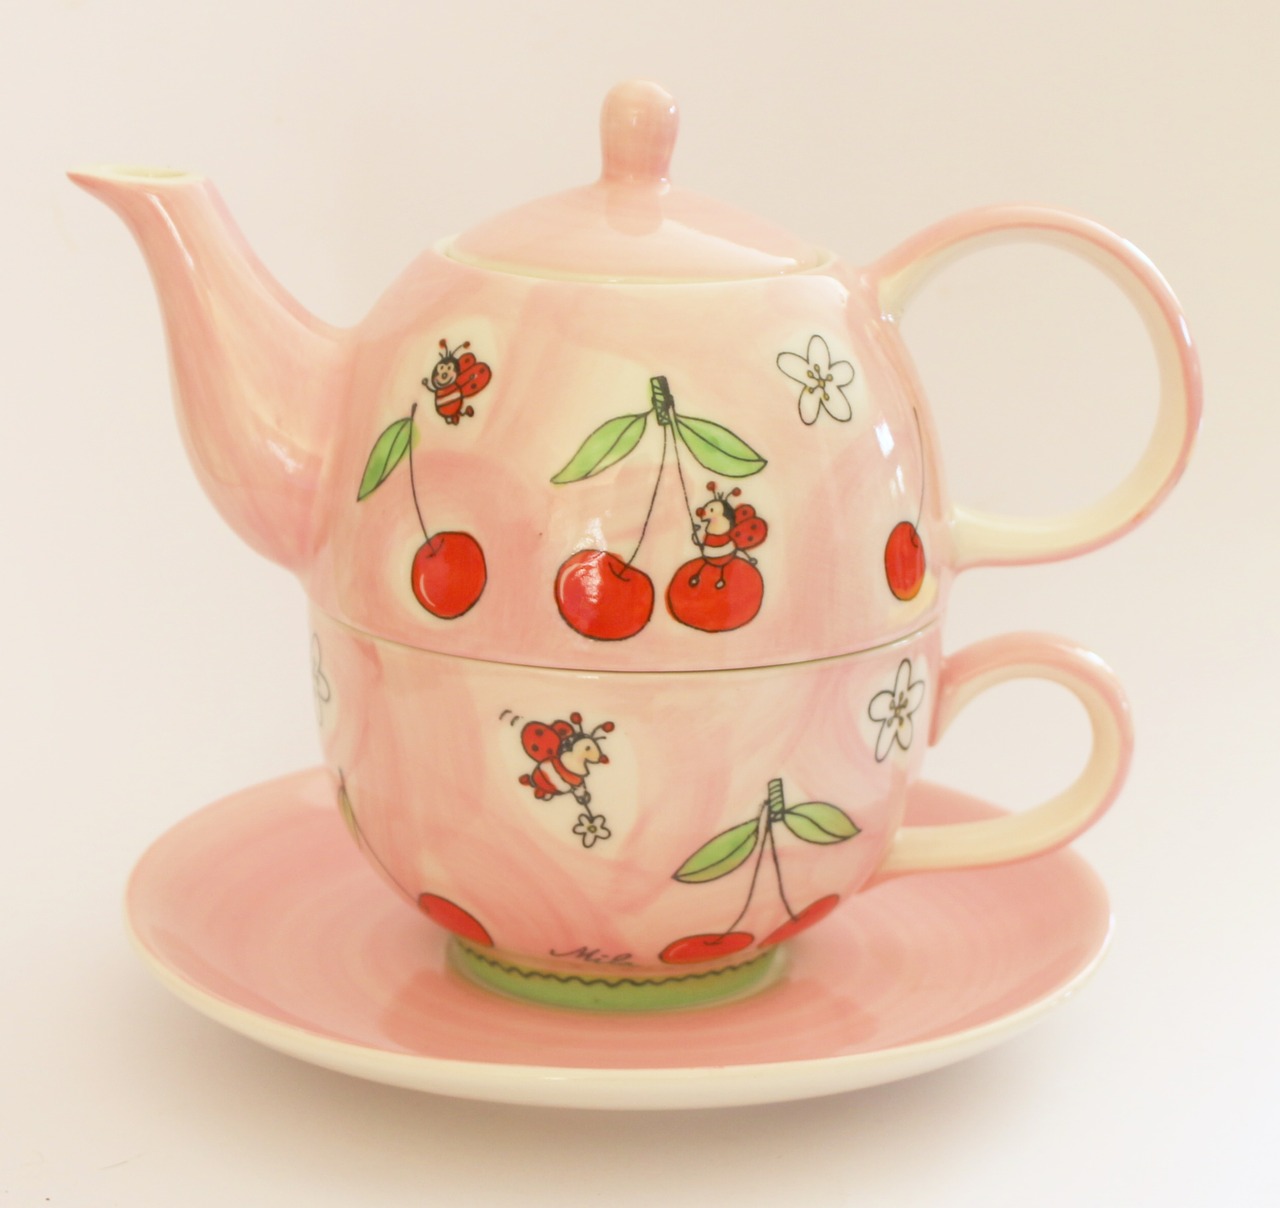 How To Sweeten Hibiscus Tea